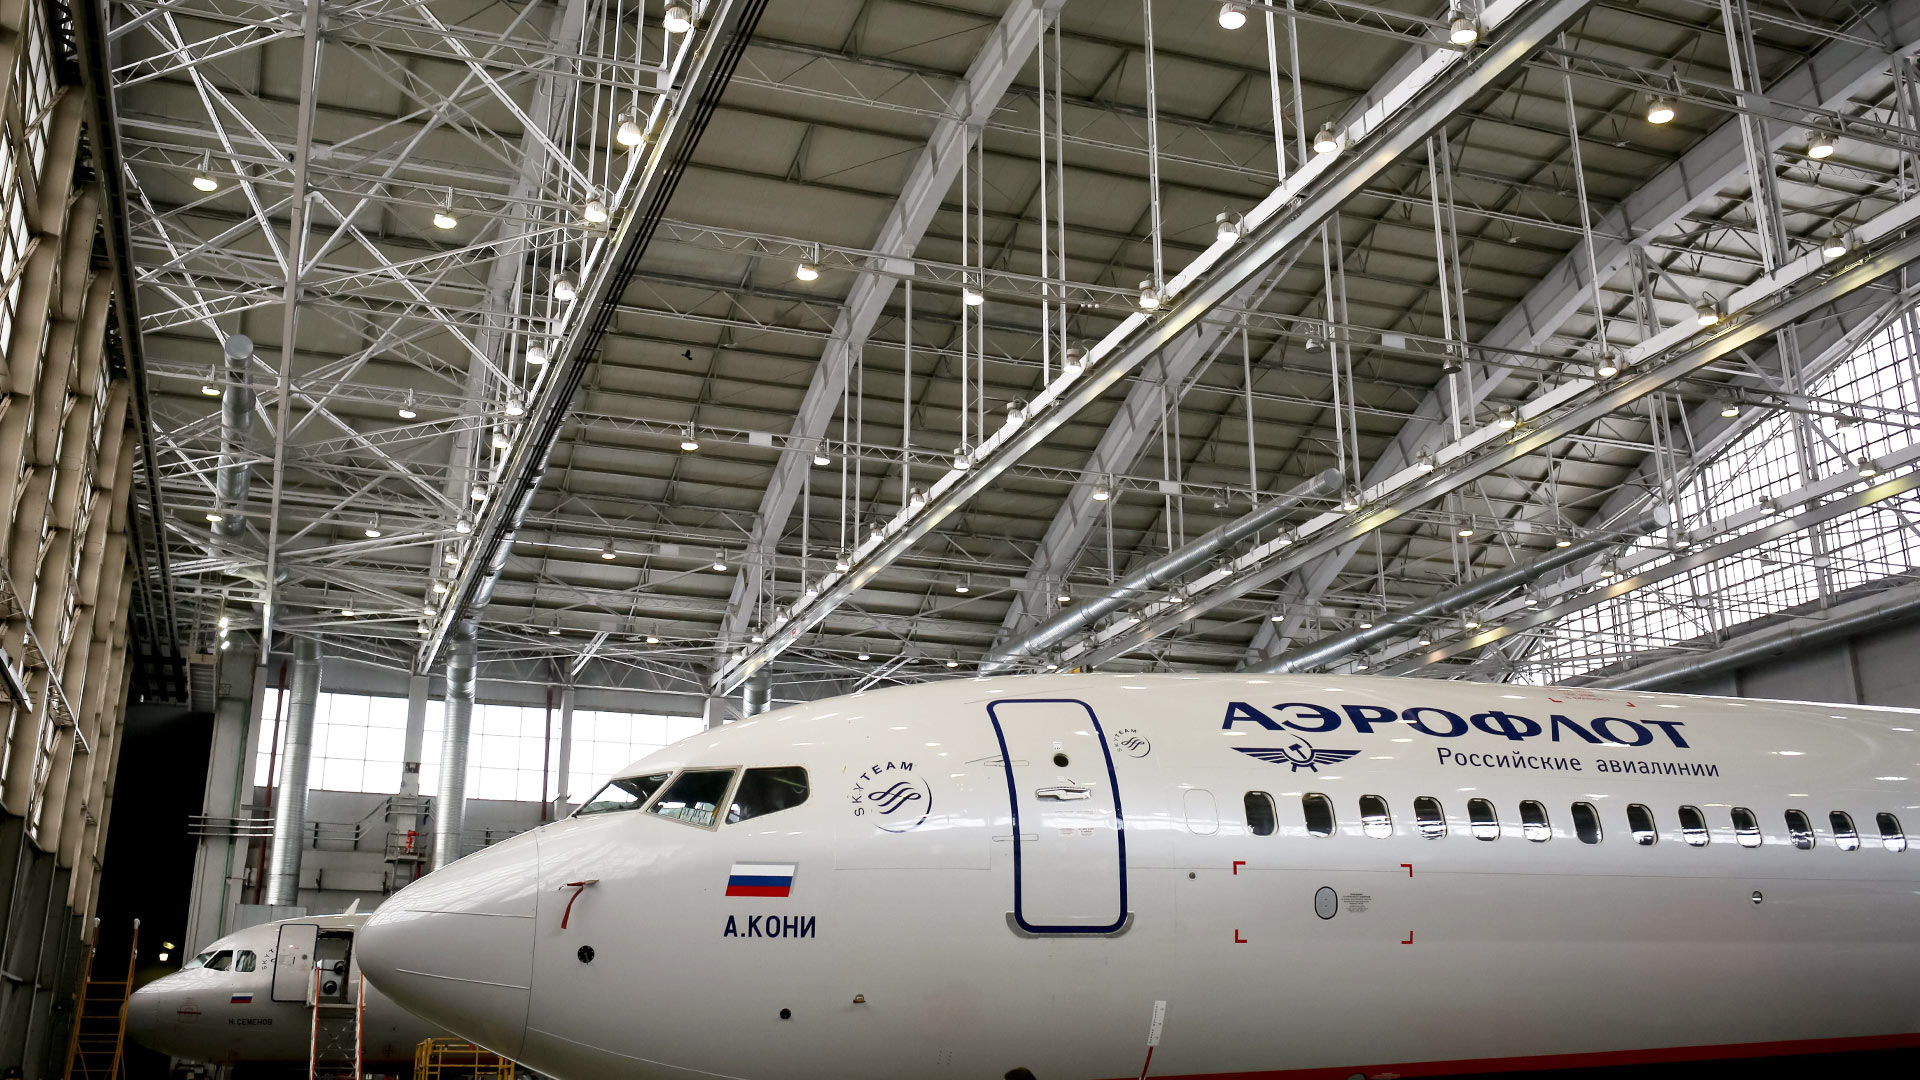 Eine Boeing 737-800 von Aeroflot im Wartungszentrum. (Archiv) | picture alliance / Russian Look